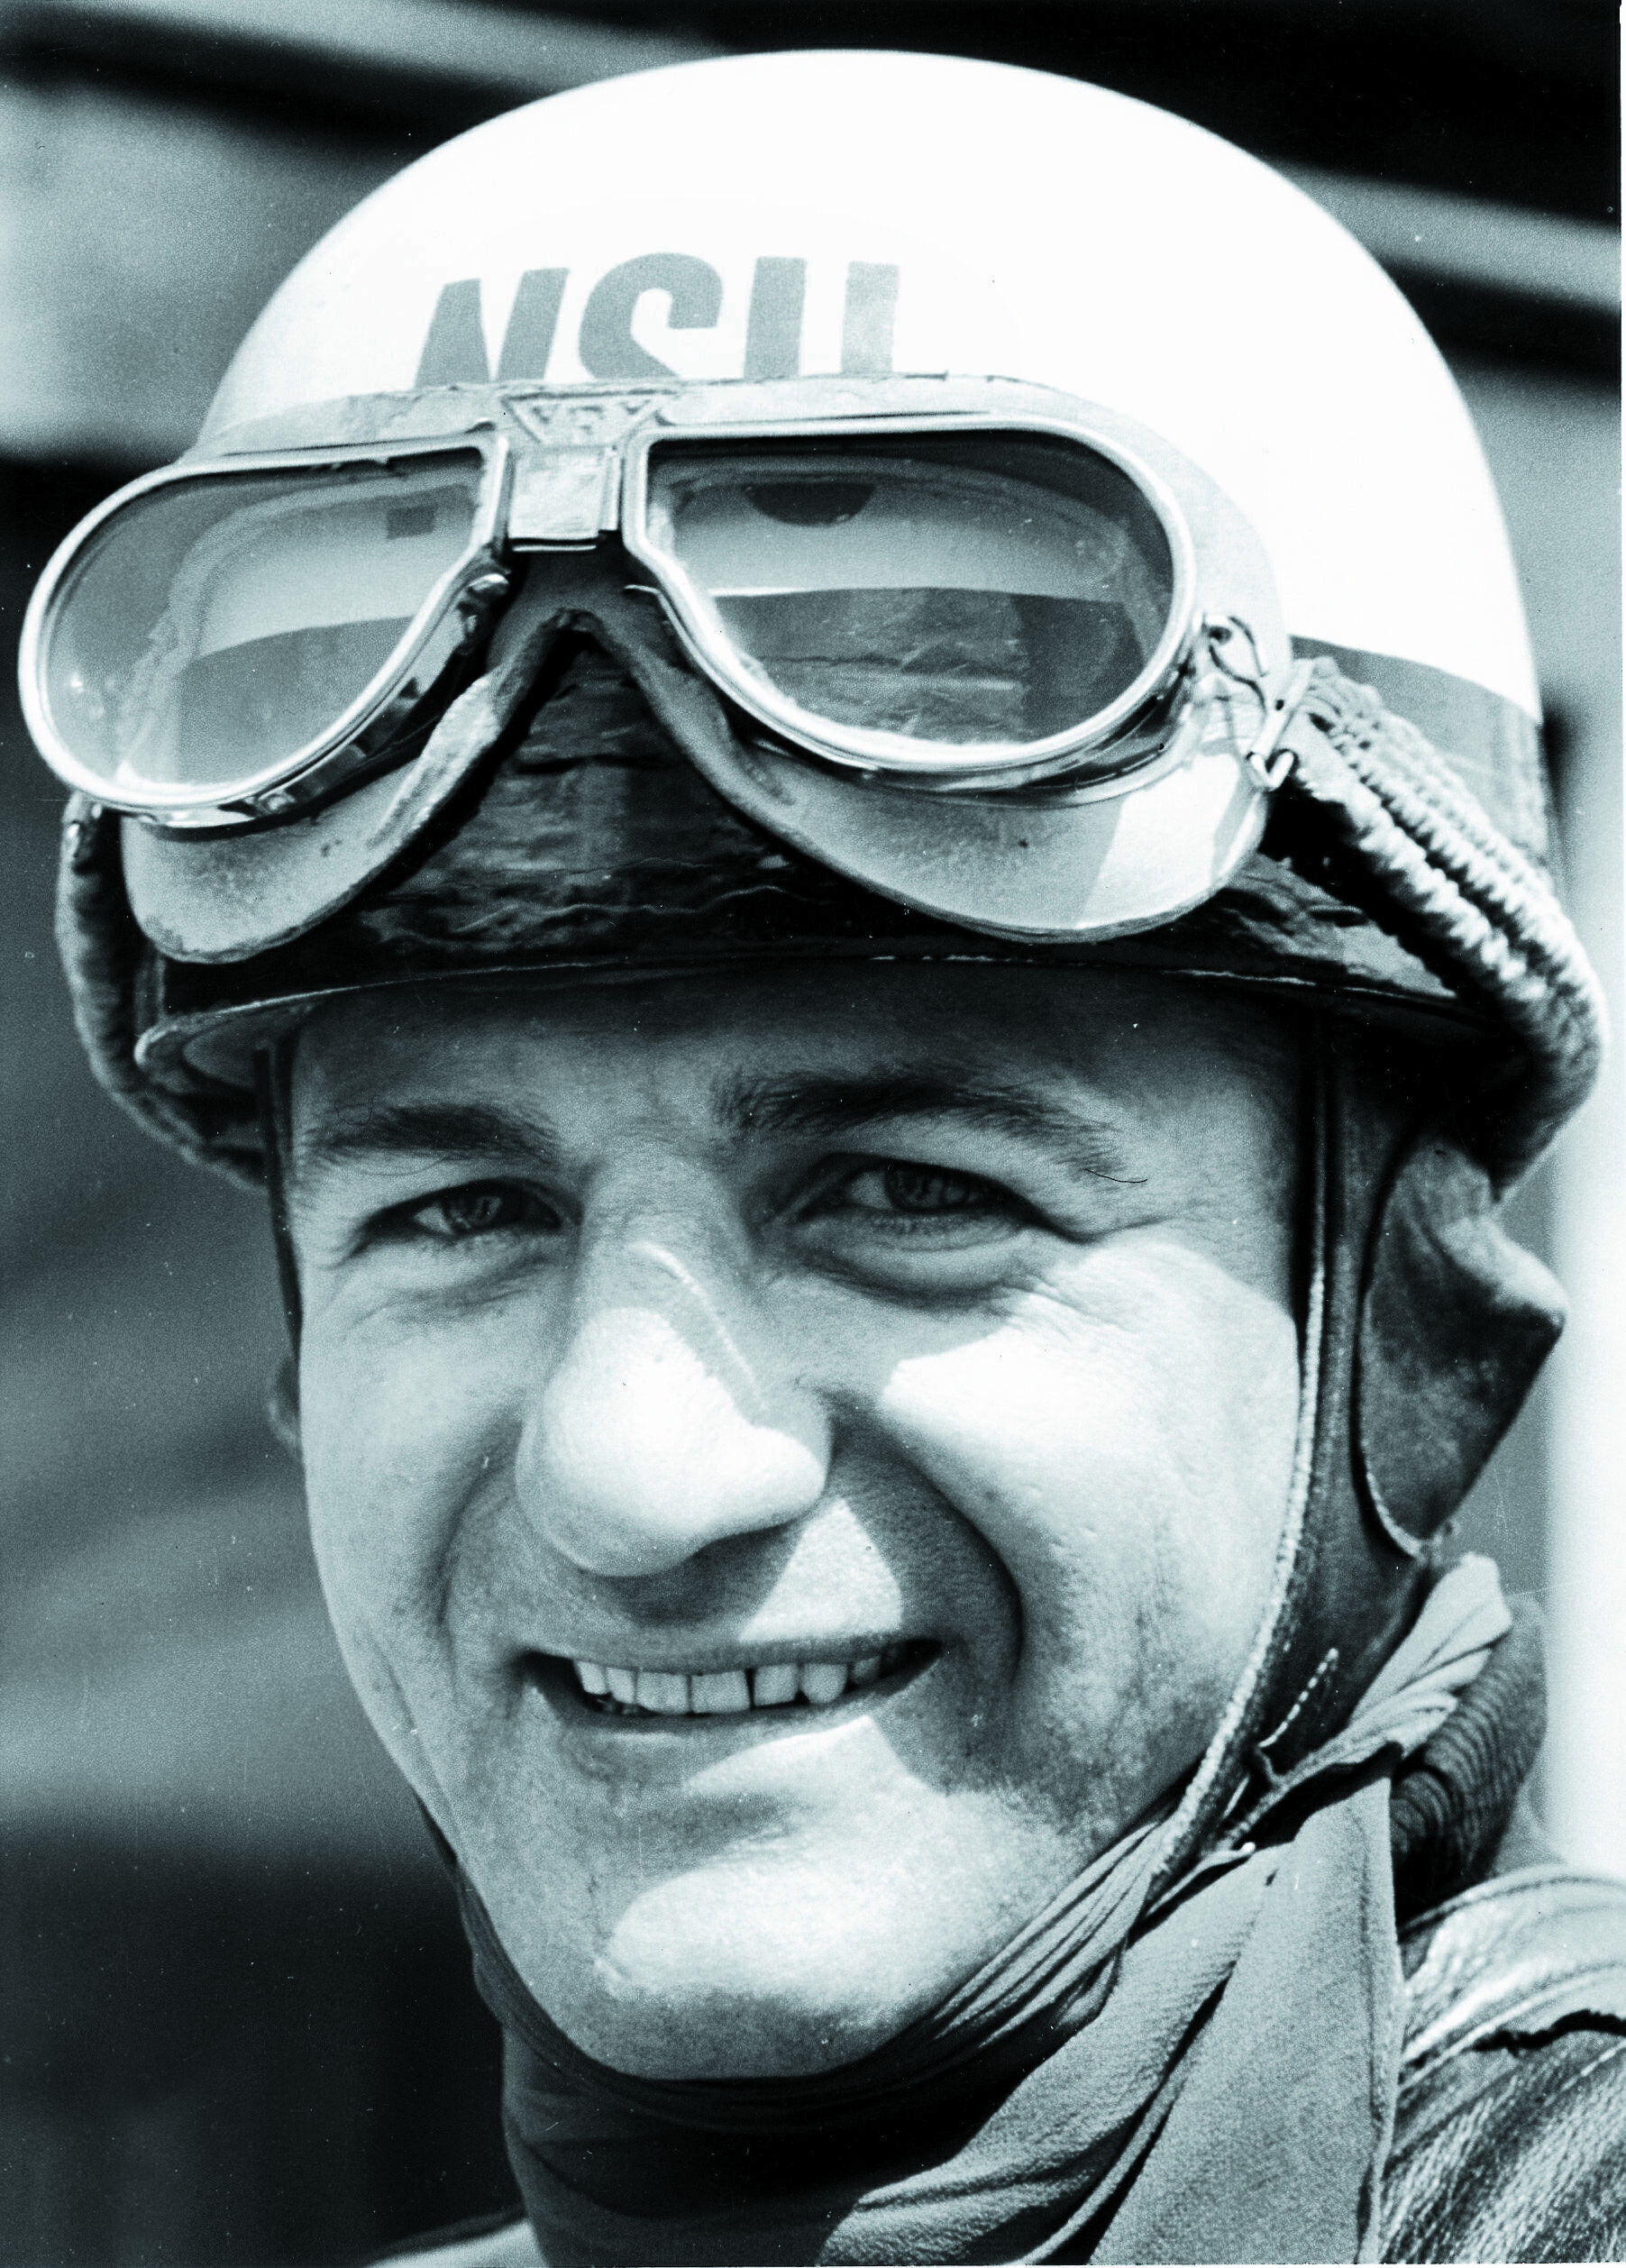 H.P. Müller 1955: Motorrad-Weltmeister in der 250 ccm Klasse auf NSU